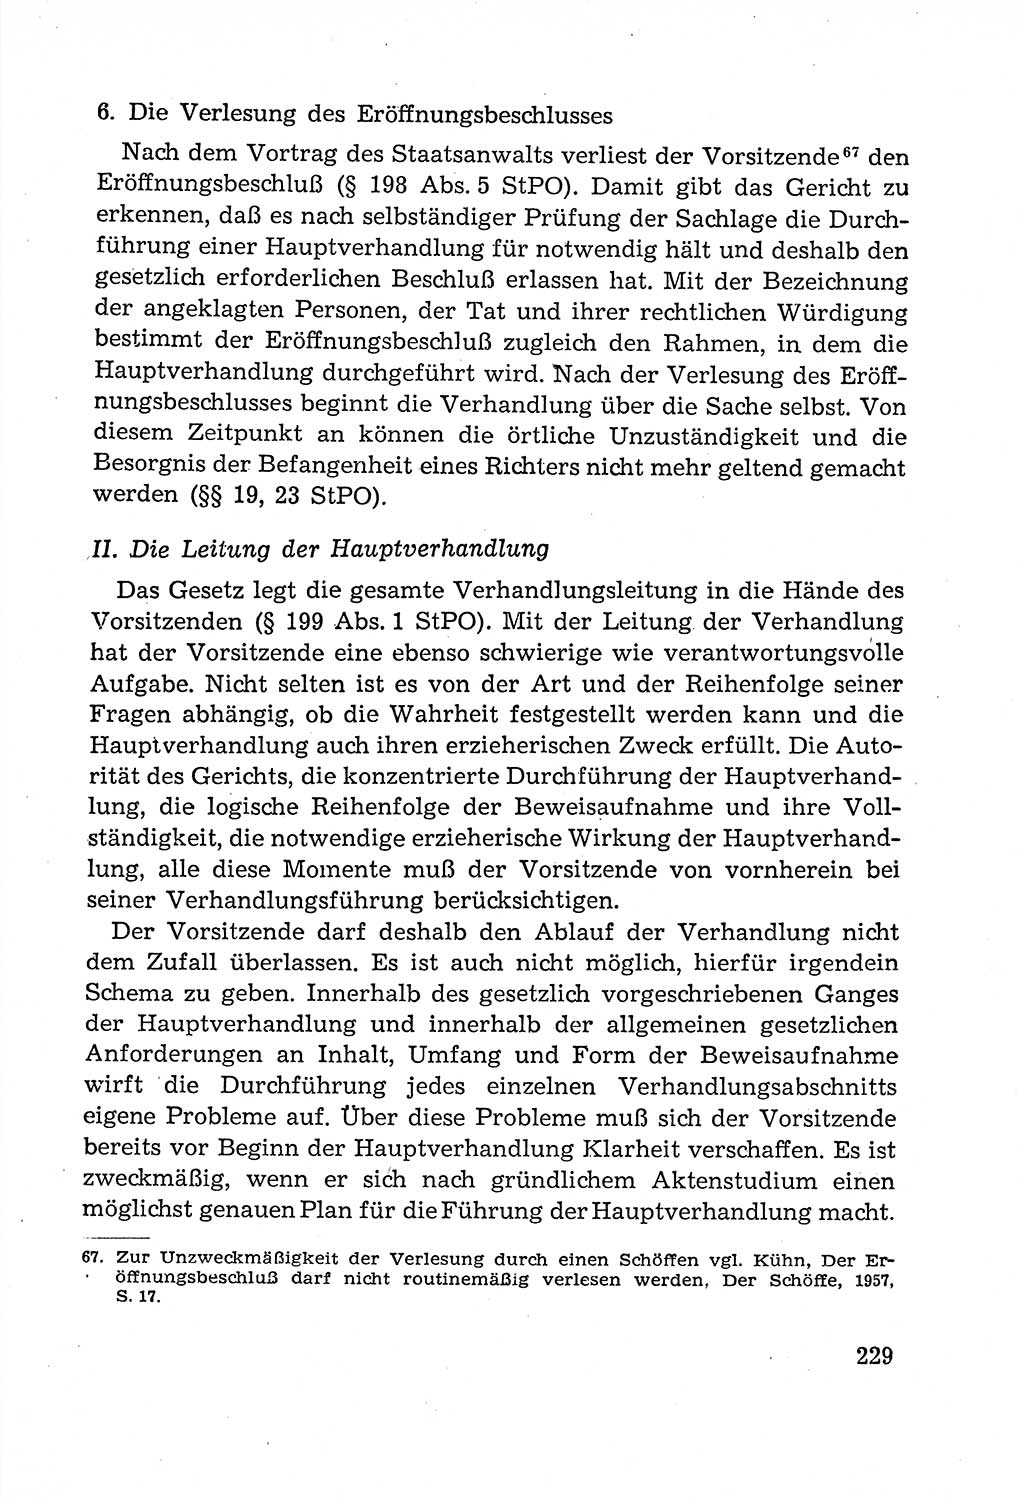 Leitfaden des Strafprozeßrechts der Deutschen Demokratischen Republik (DDR) 1959, Seite 229 (LF StPR DDR 1959, S. 229)